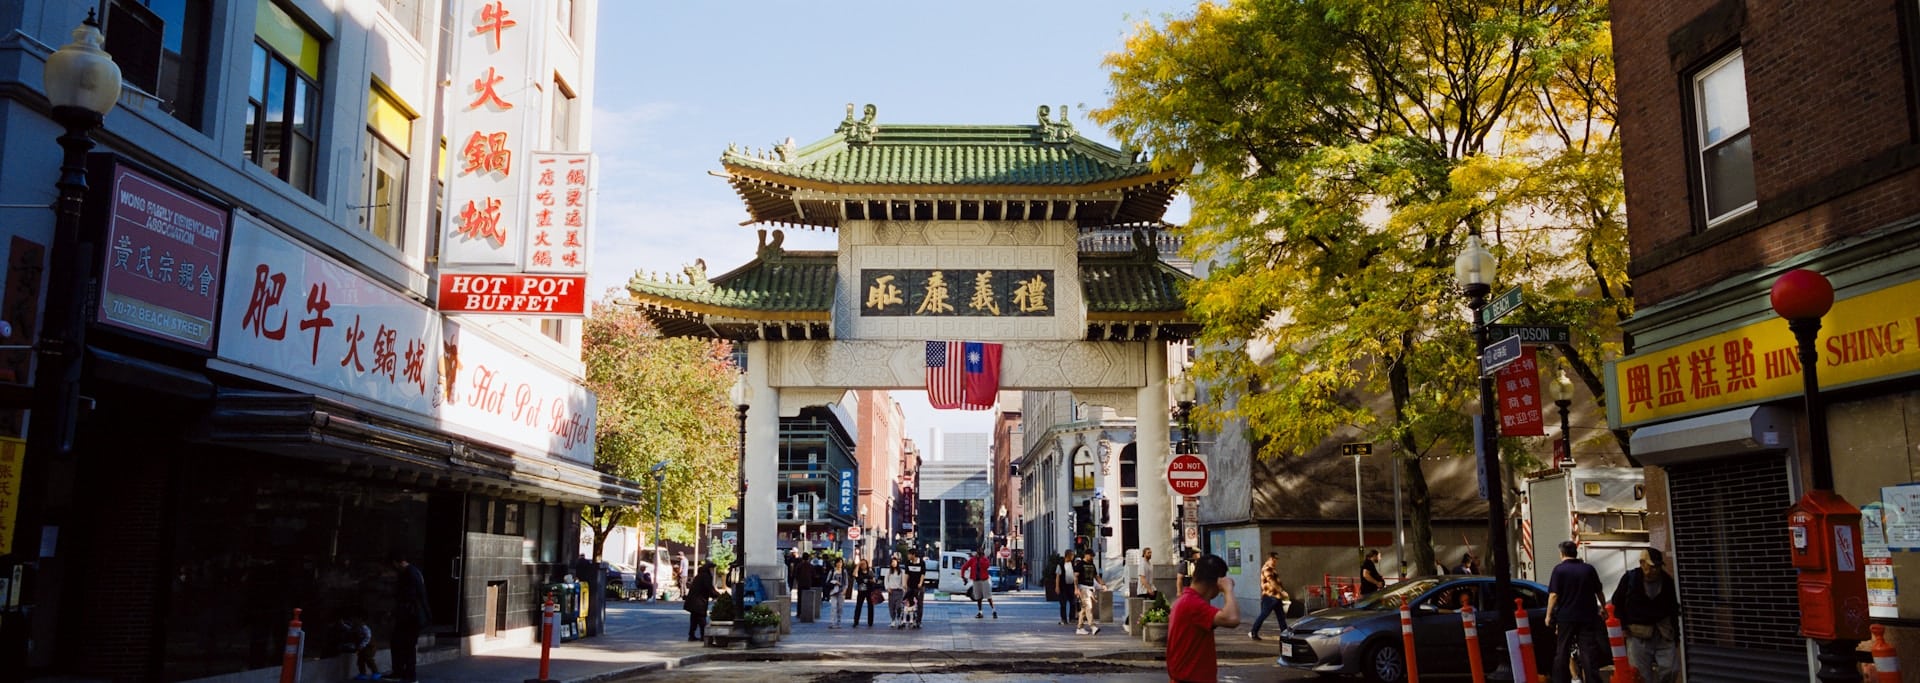 La Chinatown di Boston è uno dei migliori quartieri per i turisti della città